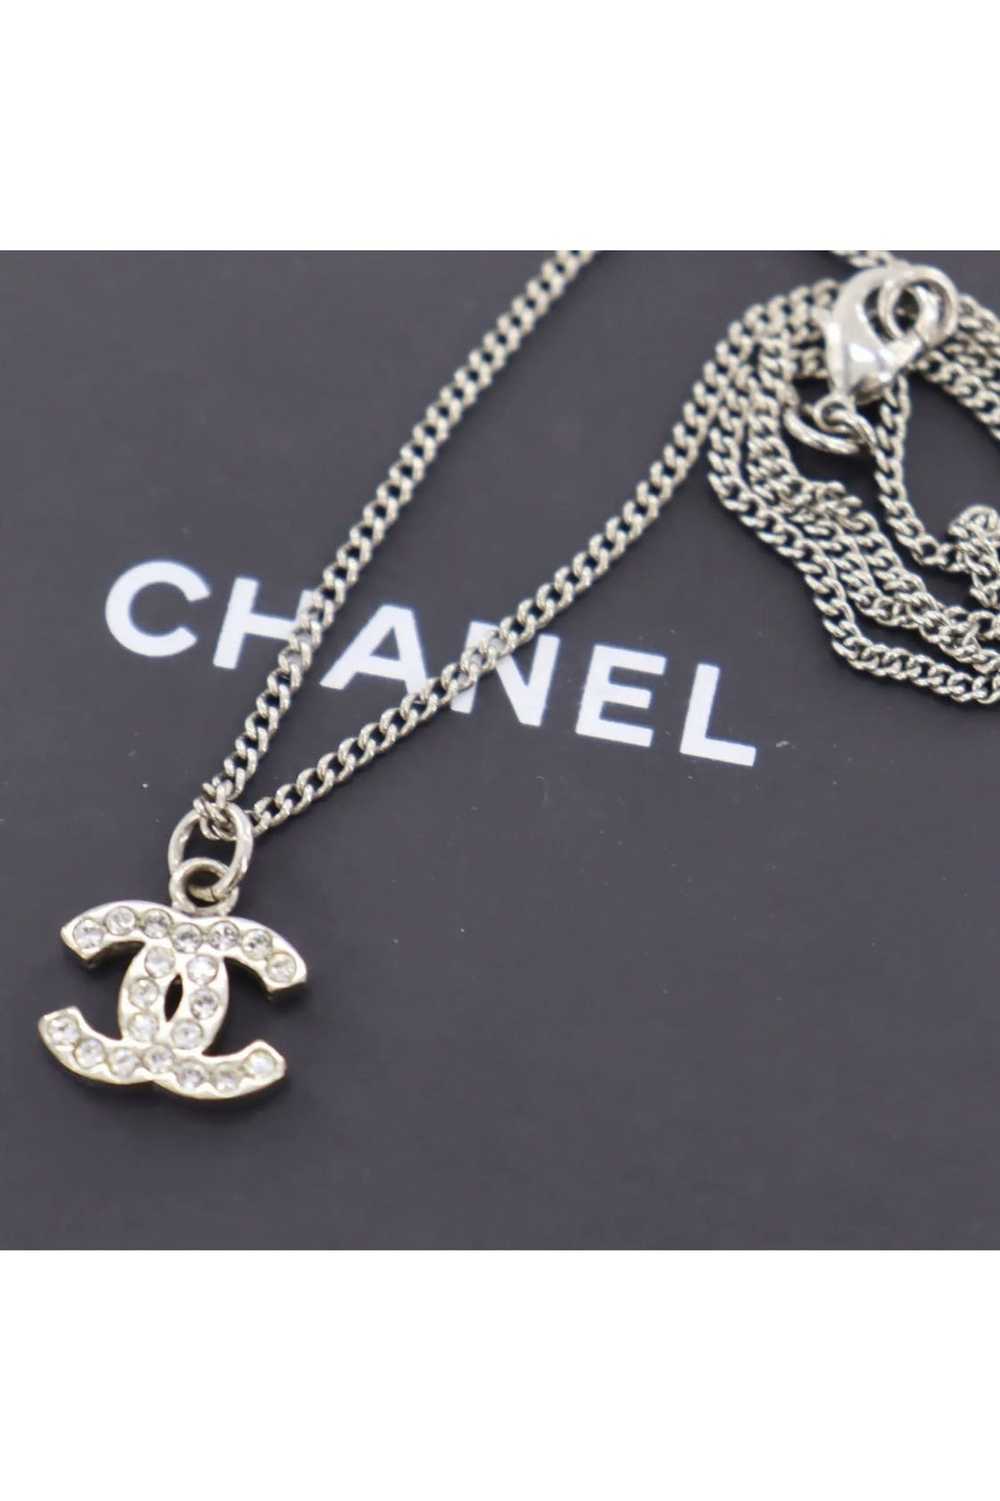 Chanel necklace -- rhinestone - Gem